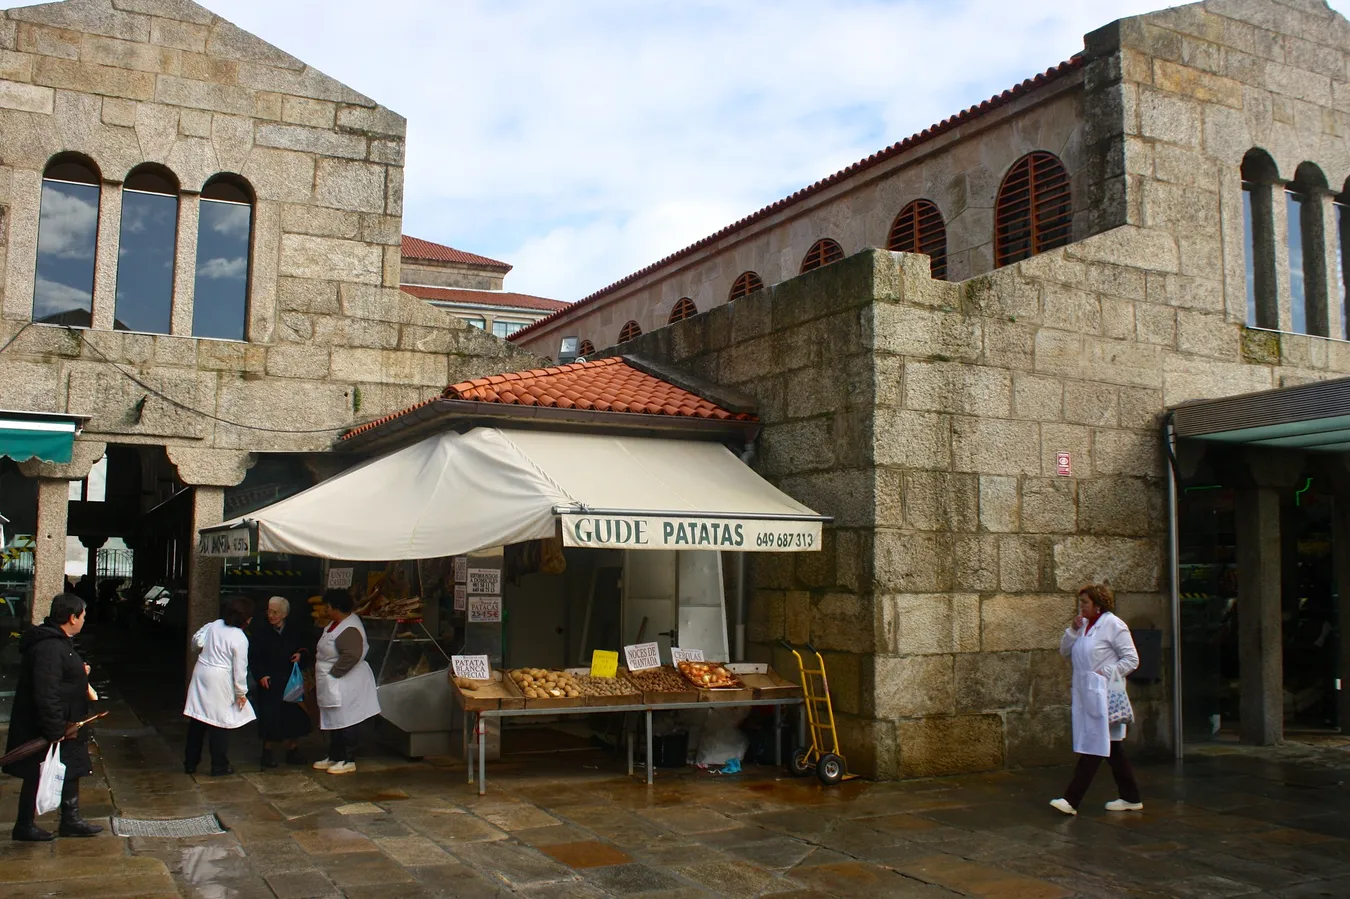 Mercado de Abastos Santiago de Compostela